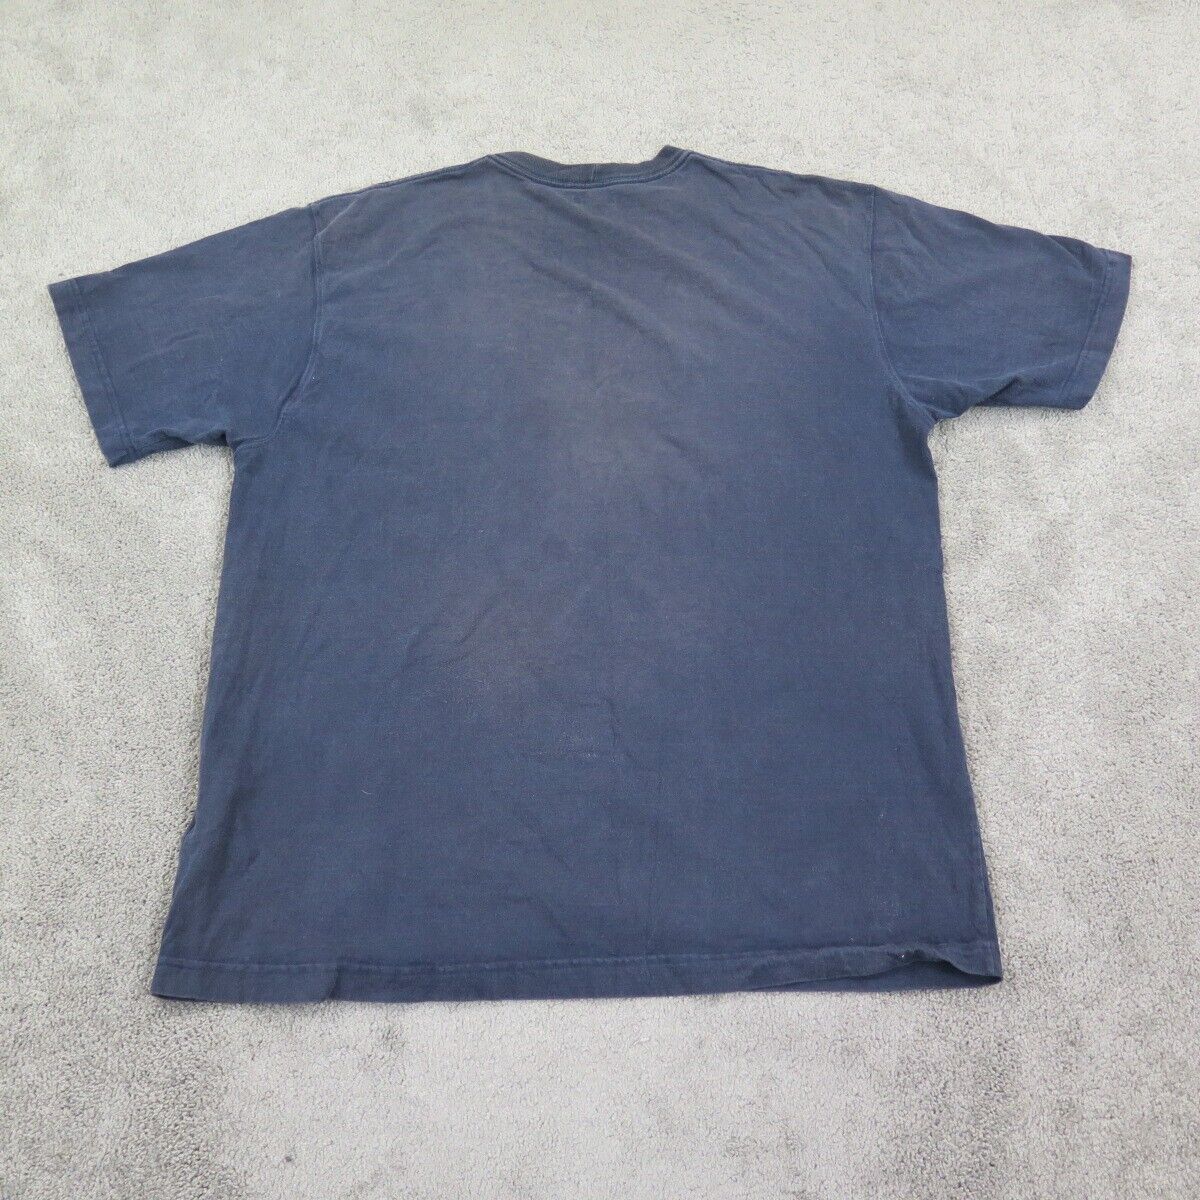 Carhartt Shirt Mens Large Blue Crew Neck 100% Cotton Lightweight Outdoors Pocket